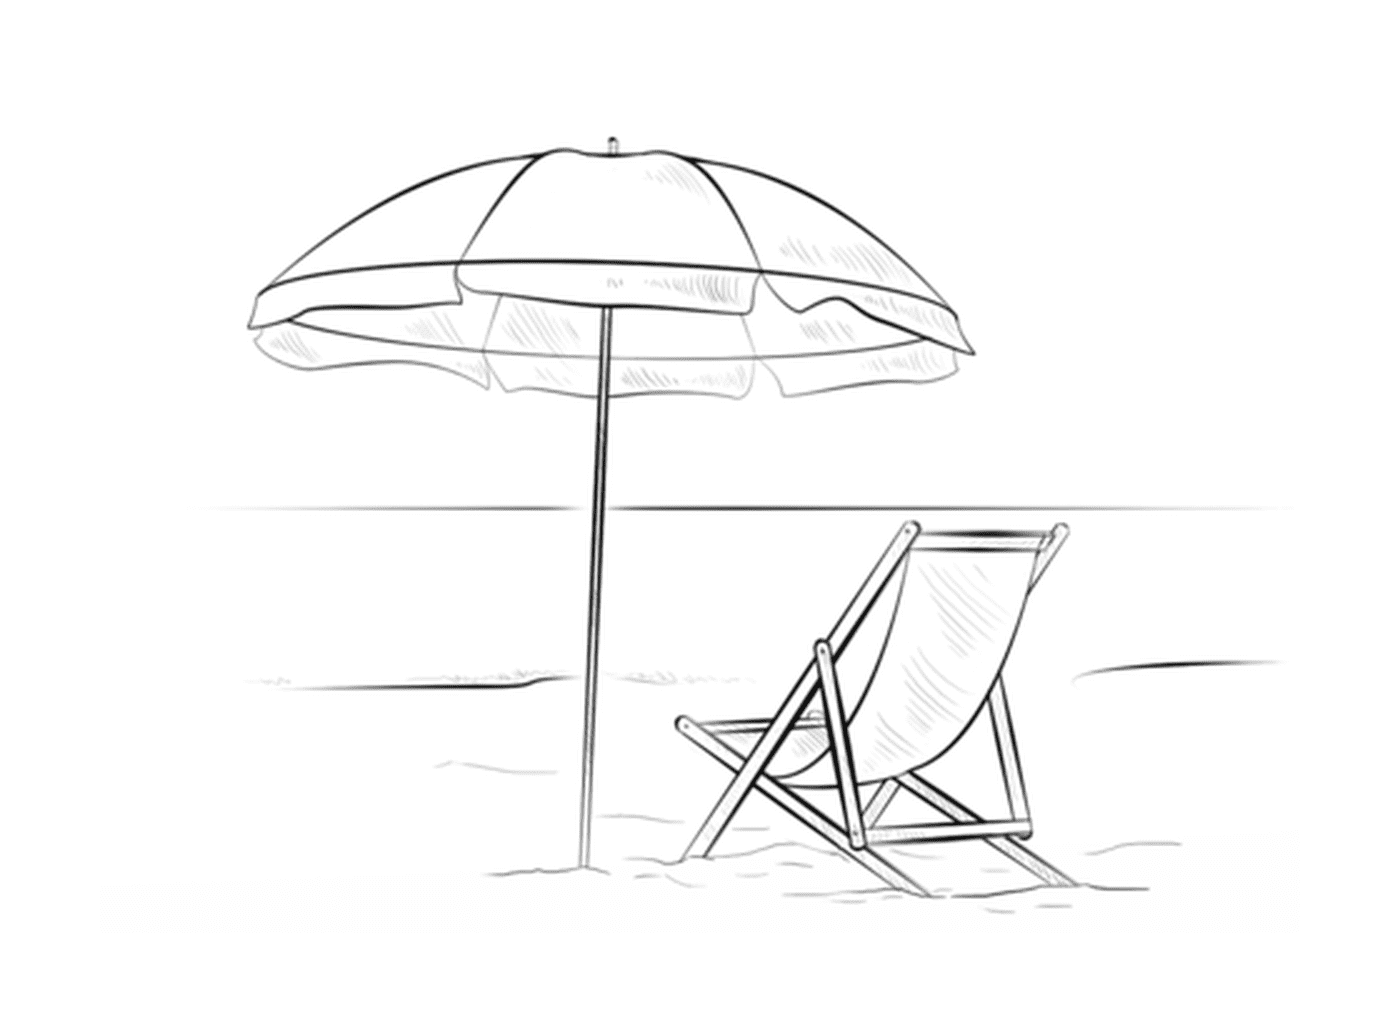   Un parasol avec une chaise de plage pendant les vacances d'été 